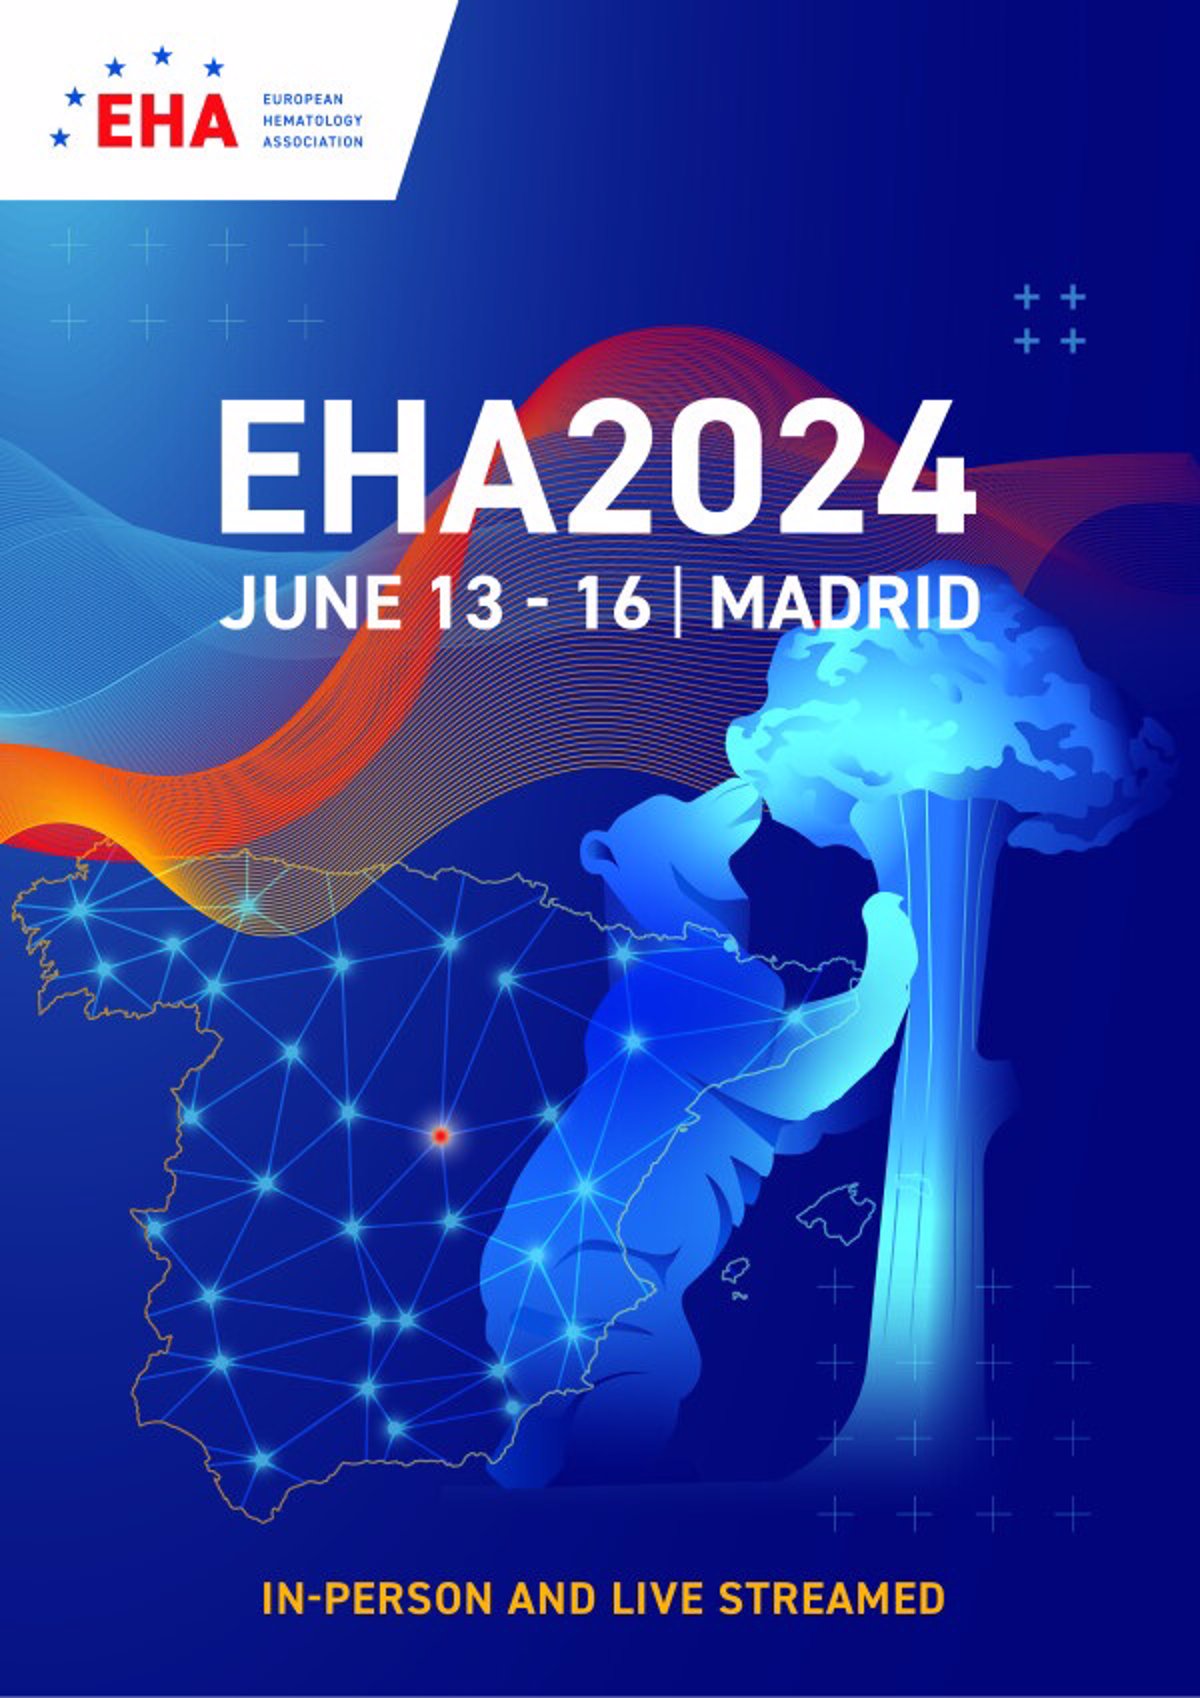 La Asociación Europea de Hematología celebrará su congreso de 2024 en